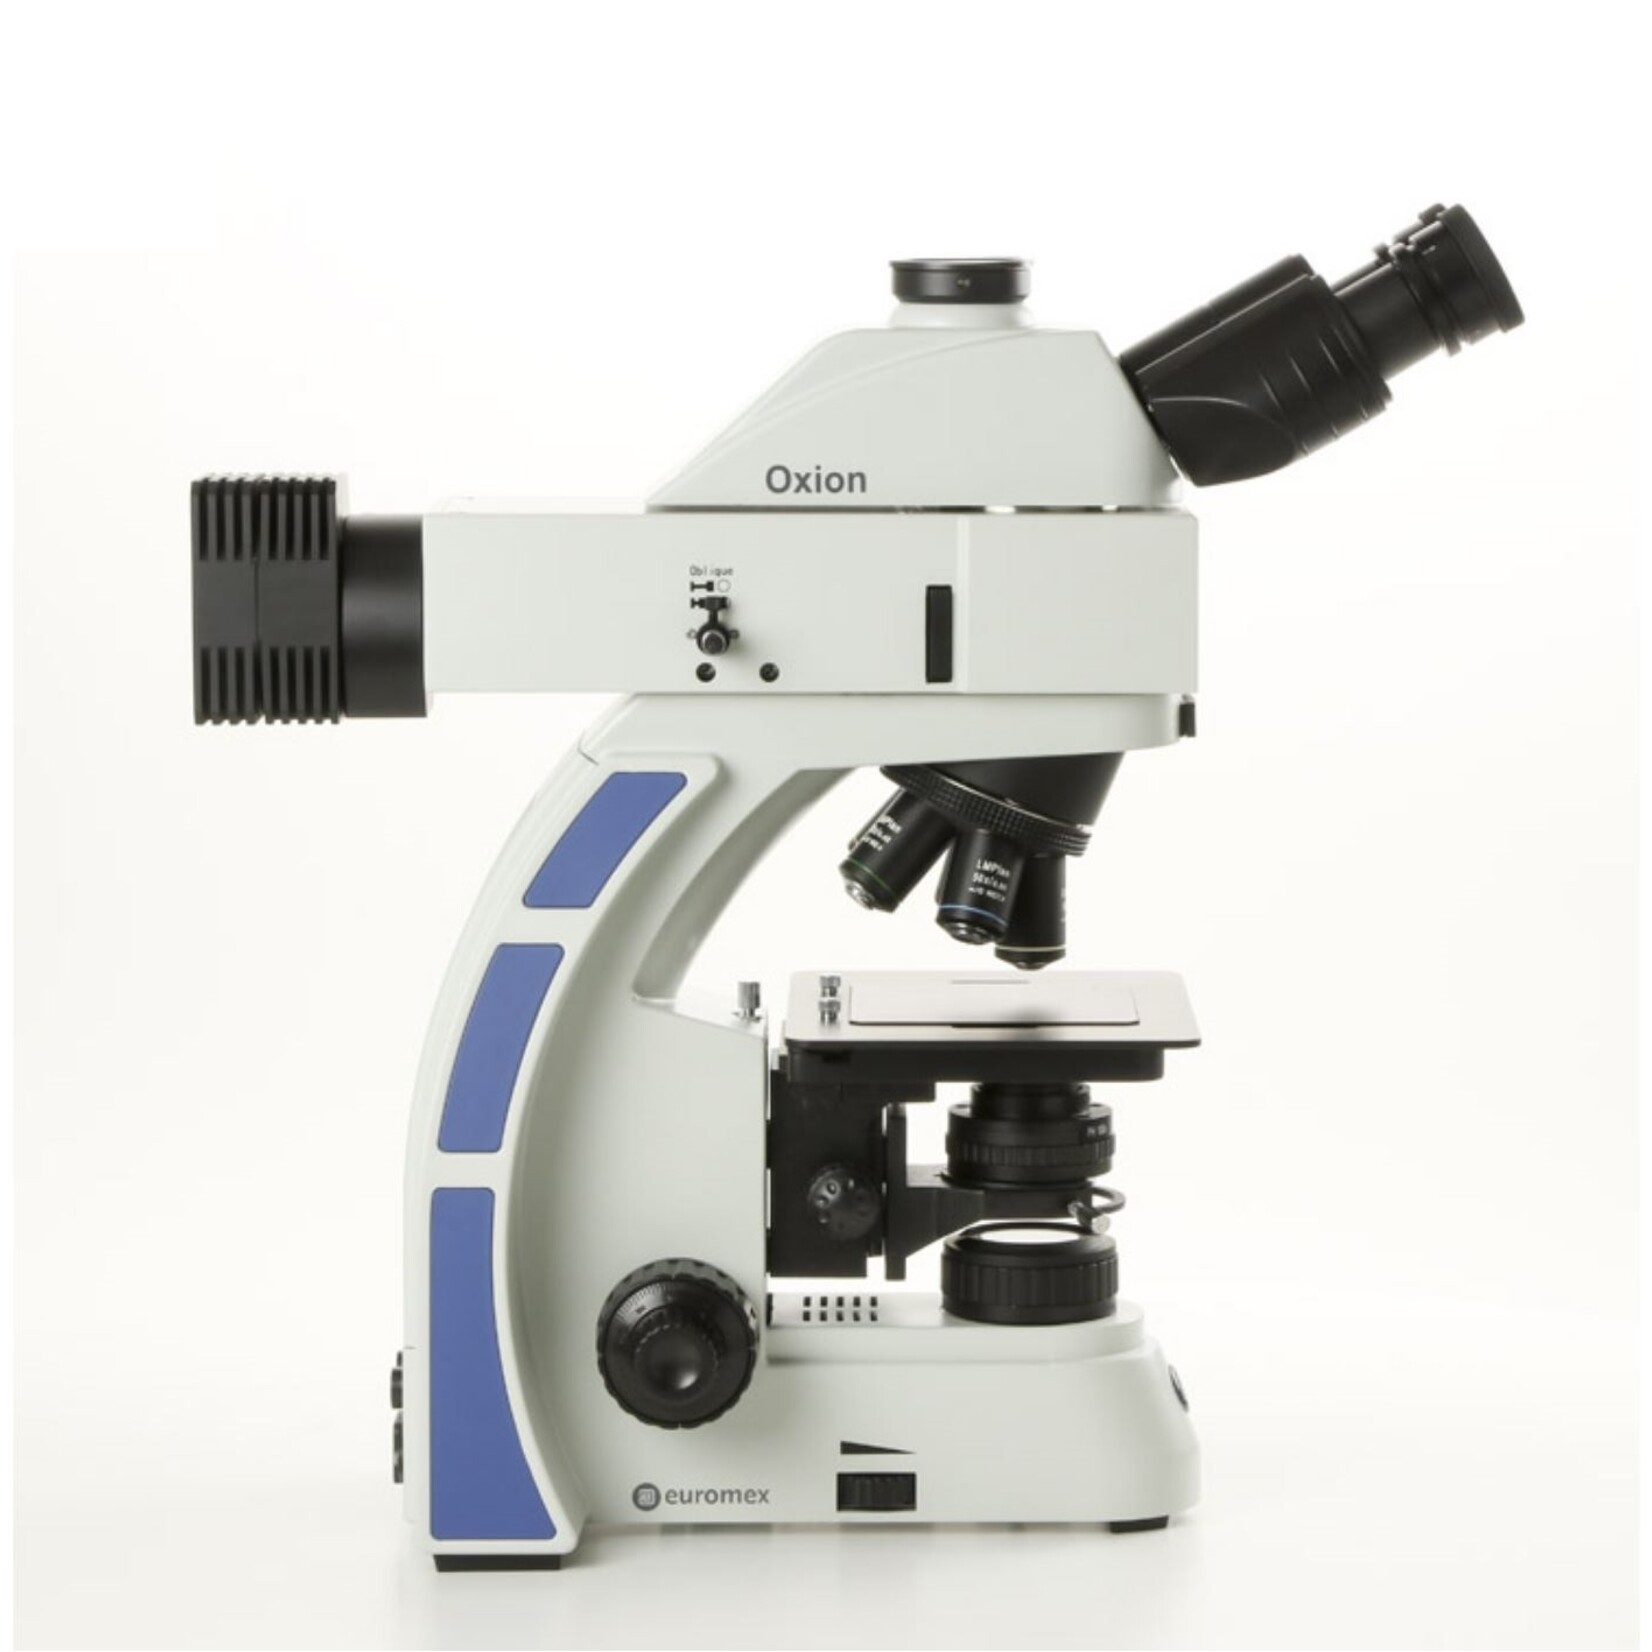 Microscopio industrial Oxion para micrografías